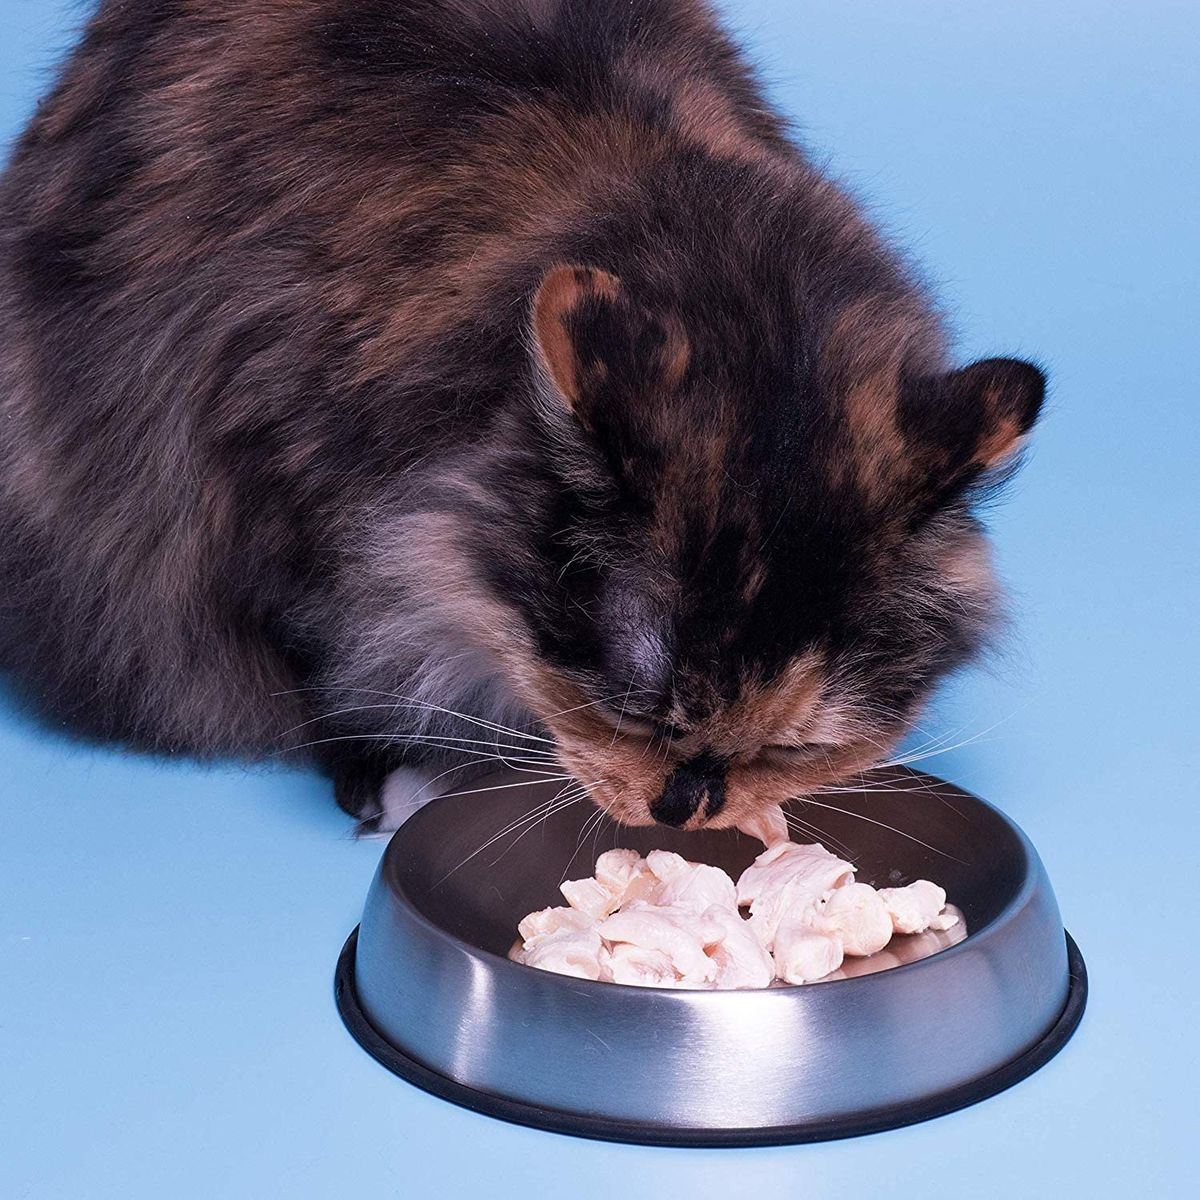 Les 5 meilleurs bols de nourriture pour chats, selon un vétérinaire